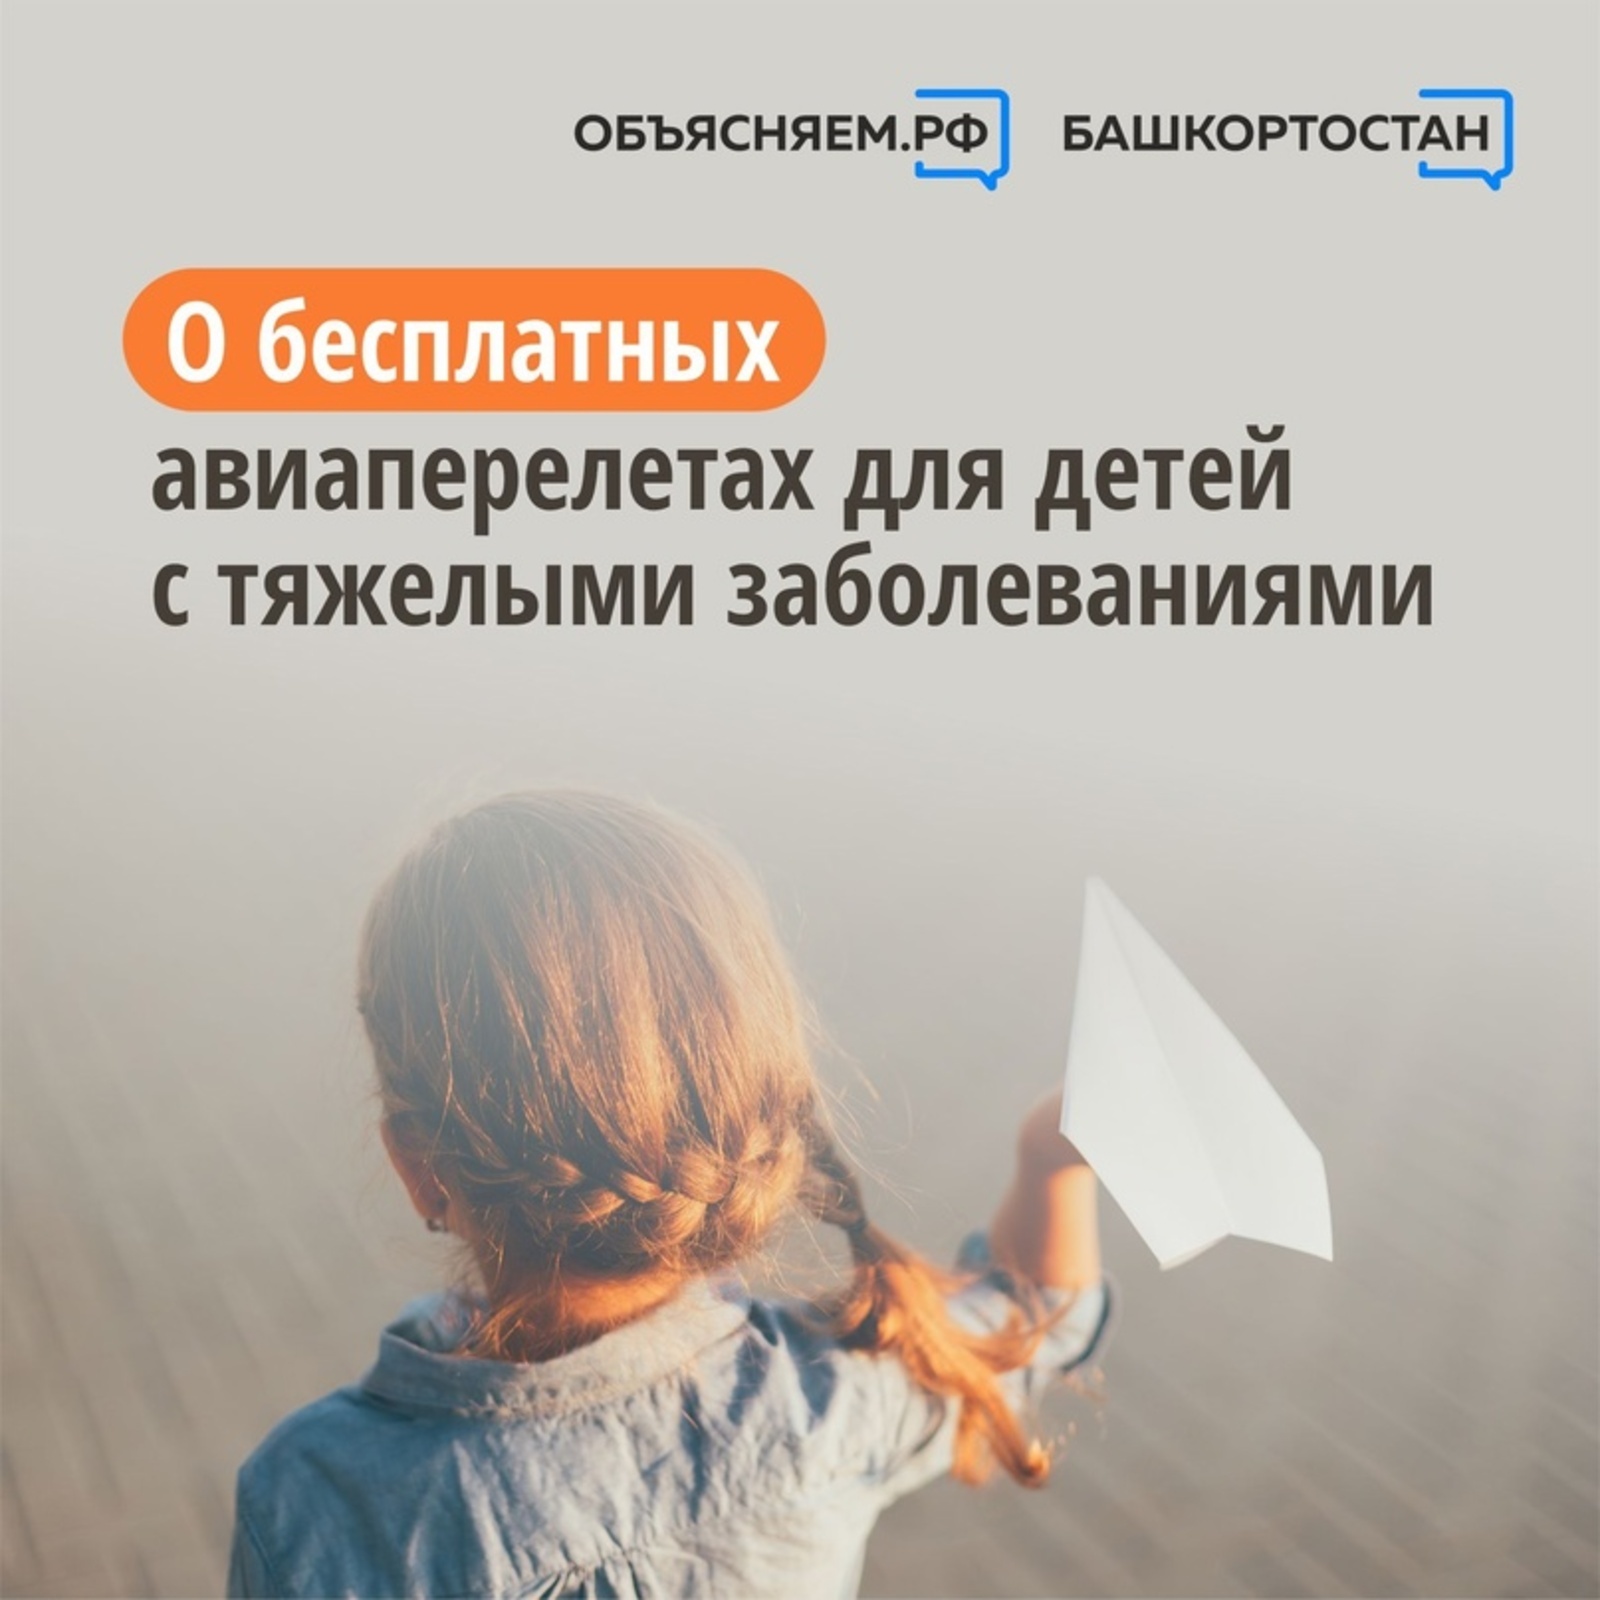 Объясняем. Башкортостан, пост: О бесплатных авиаперелетах для детей с тяжелыми заболеваниями